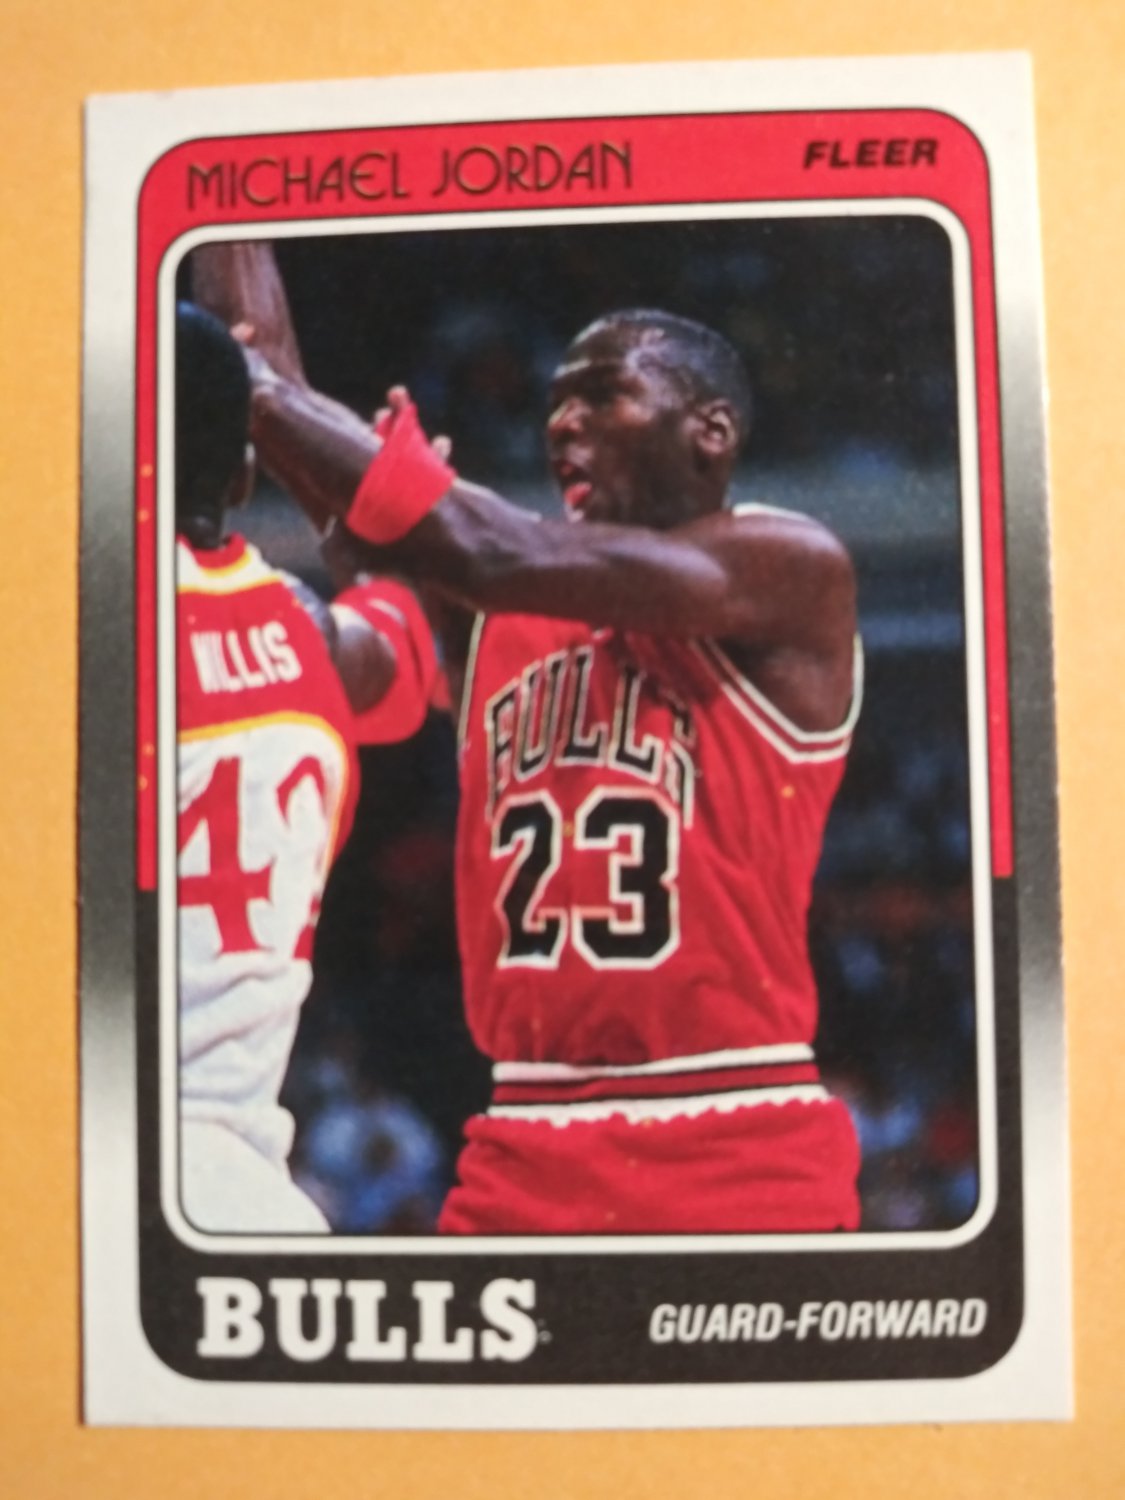 1988 uk basketball roster